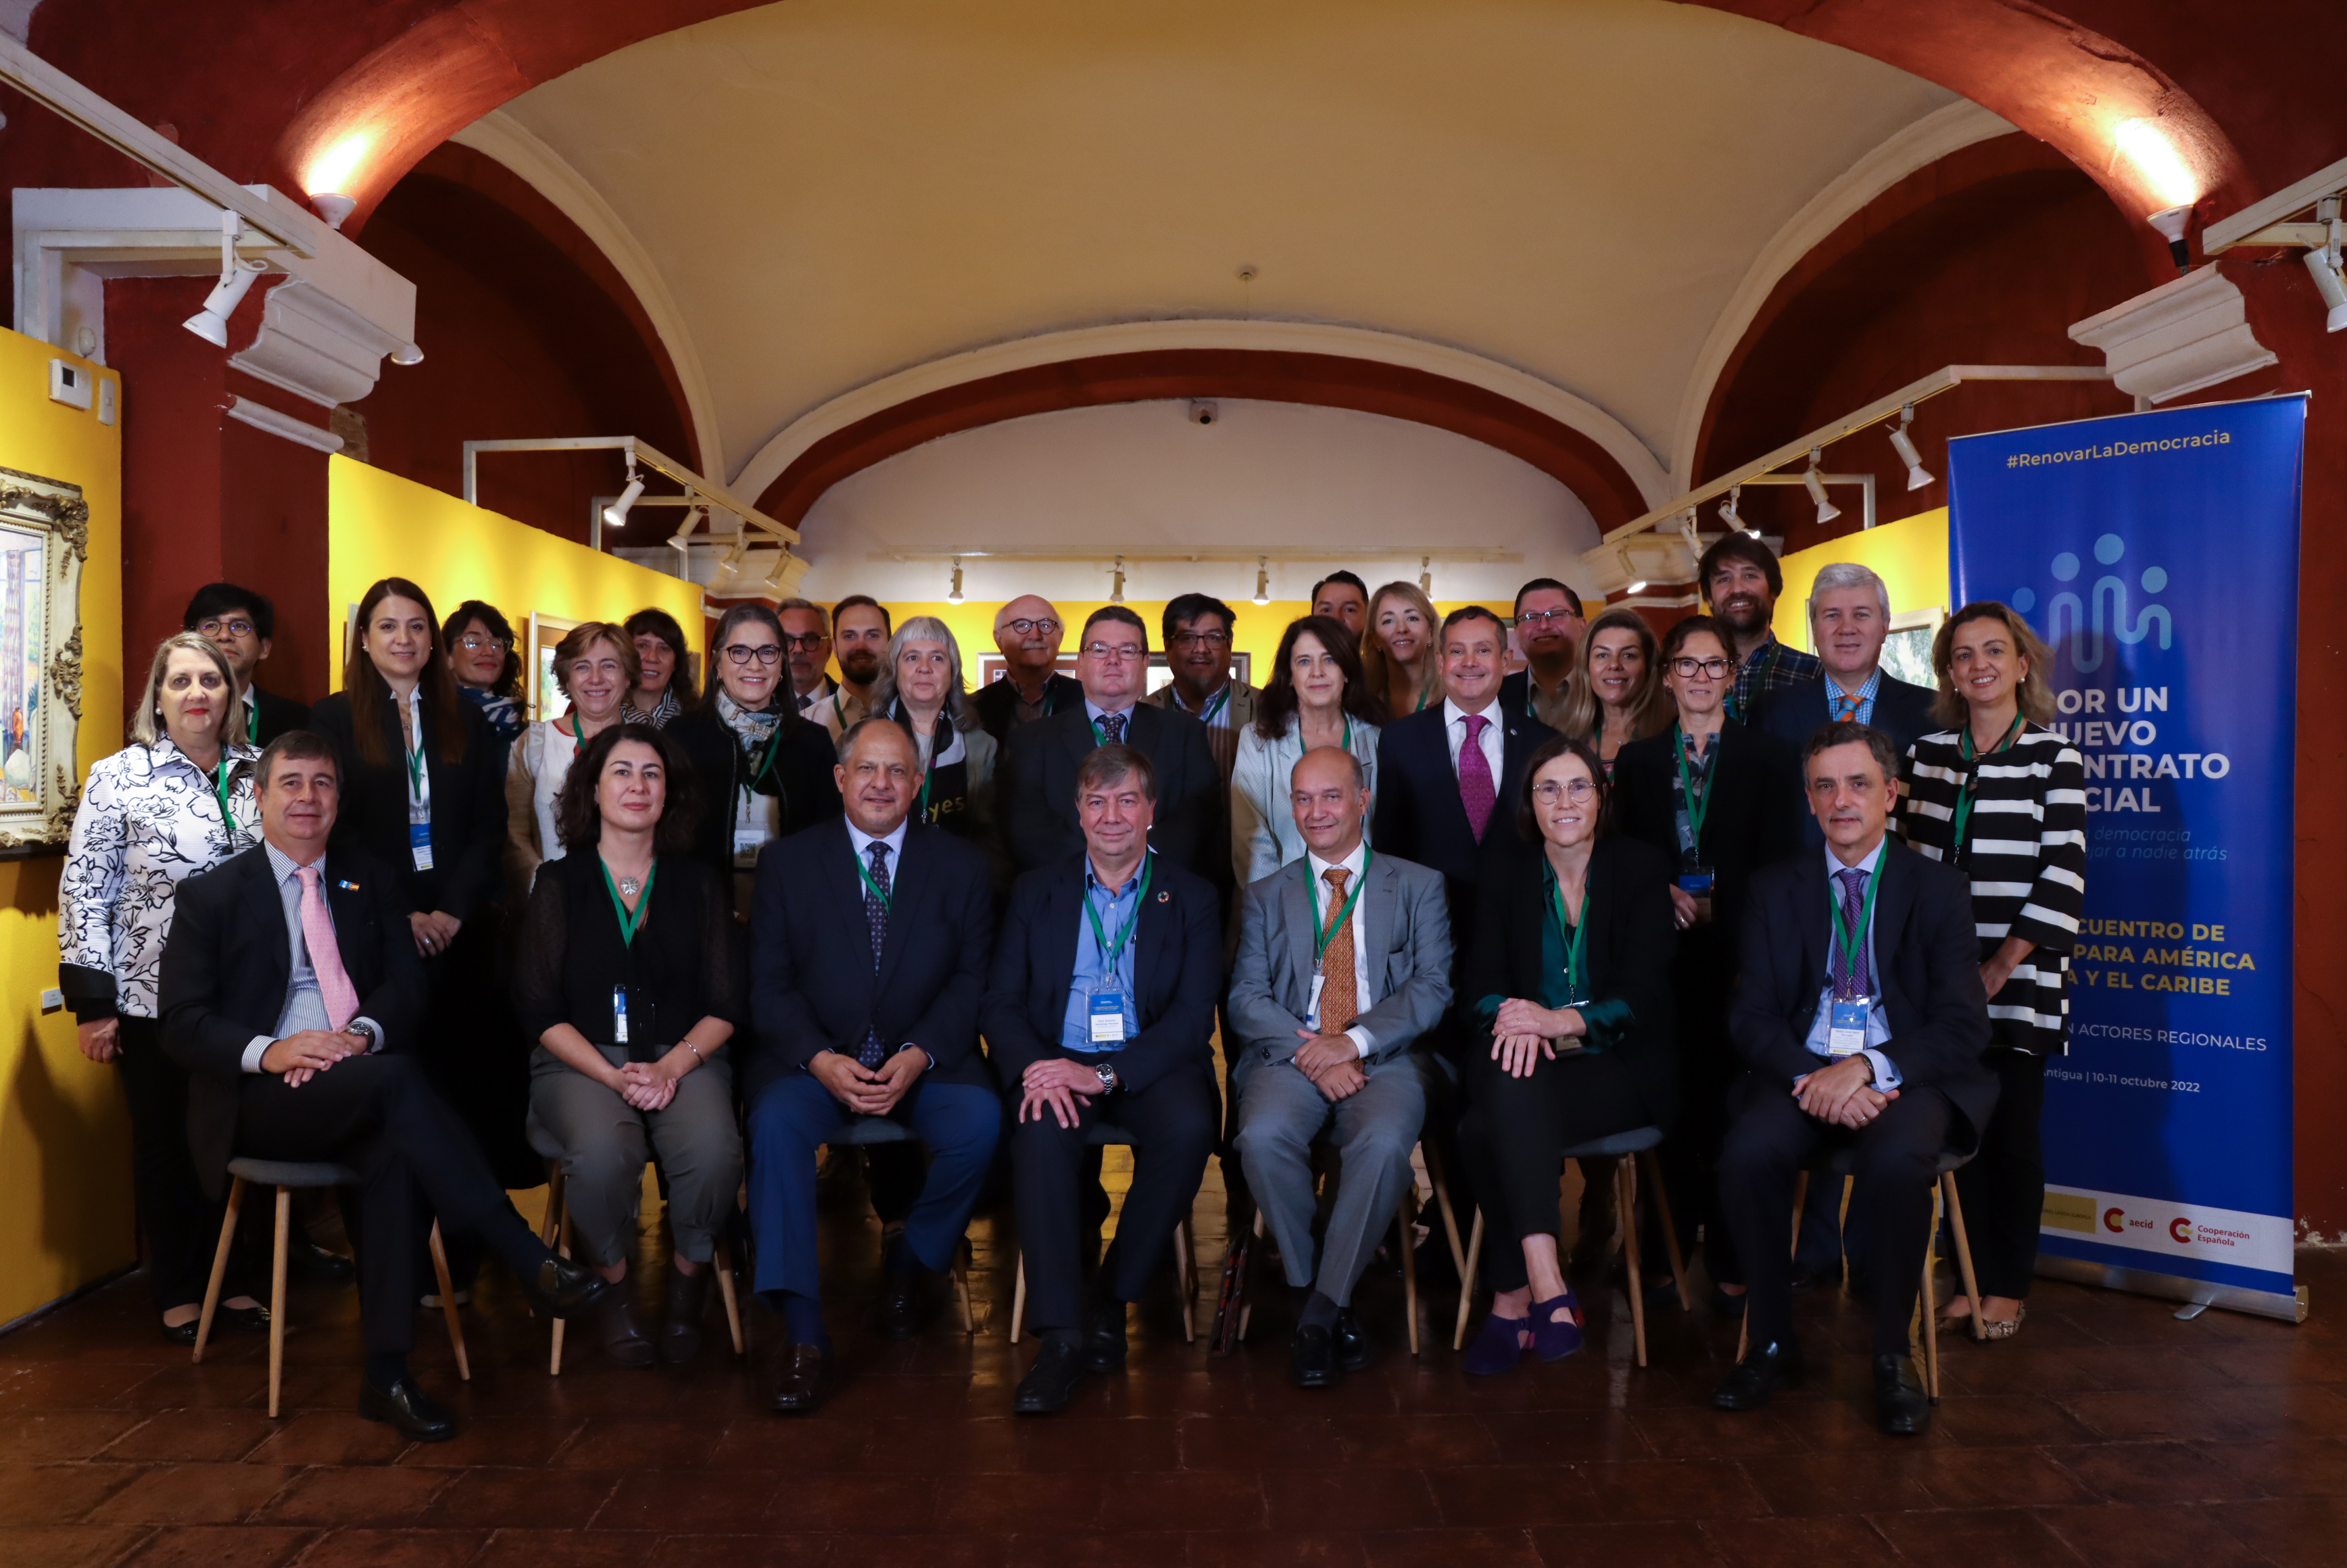 4º encuentro de debate para América Latina y el Caribe: Diálogo con actores regionales